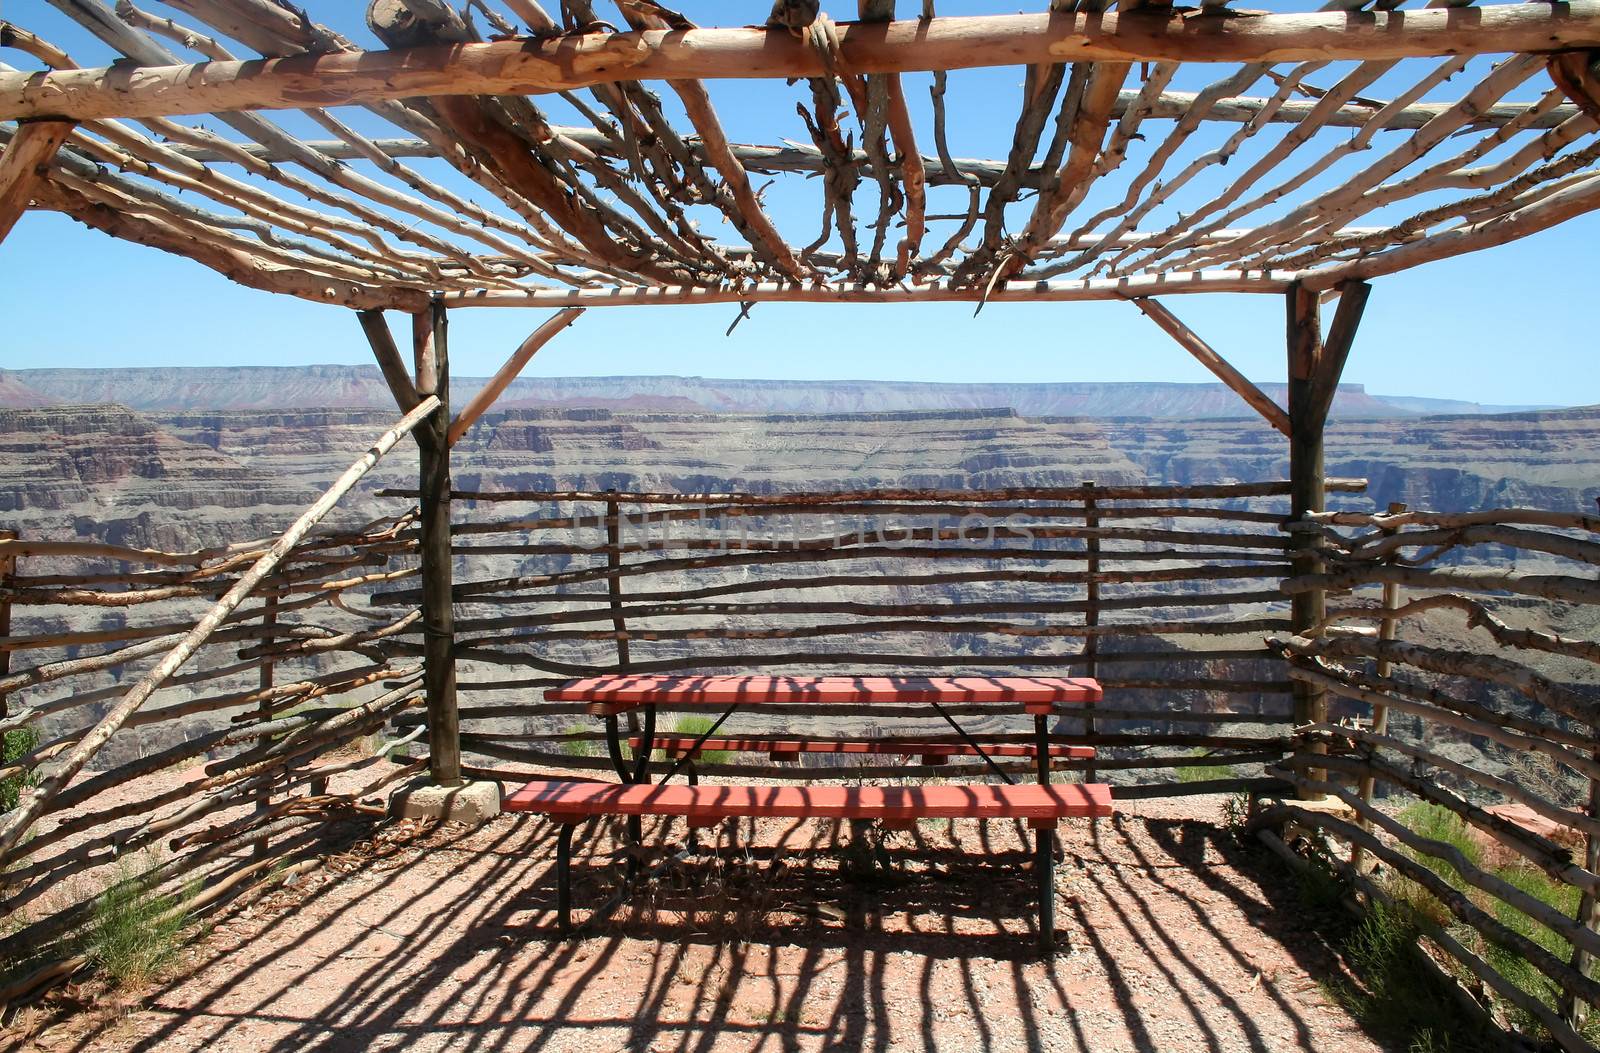 Observation Shelter Grand Canyon by jabiru